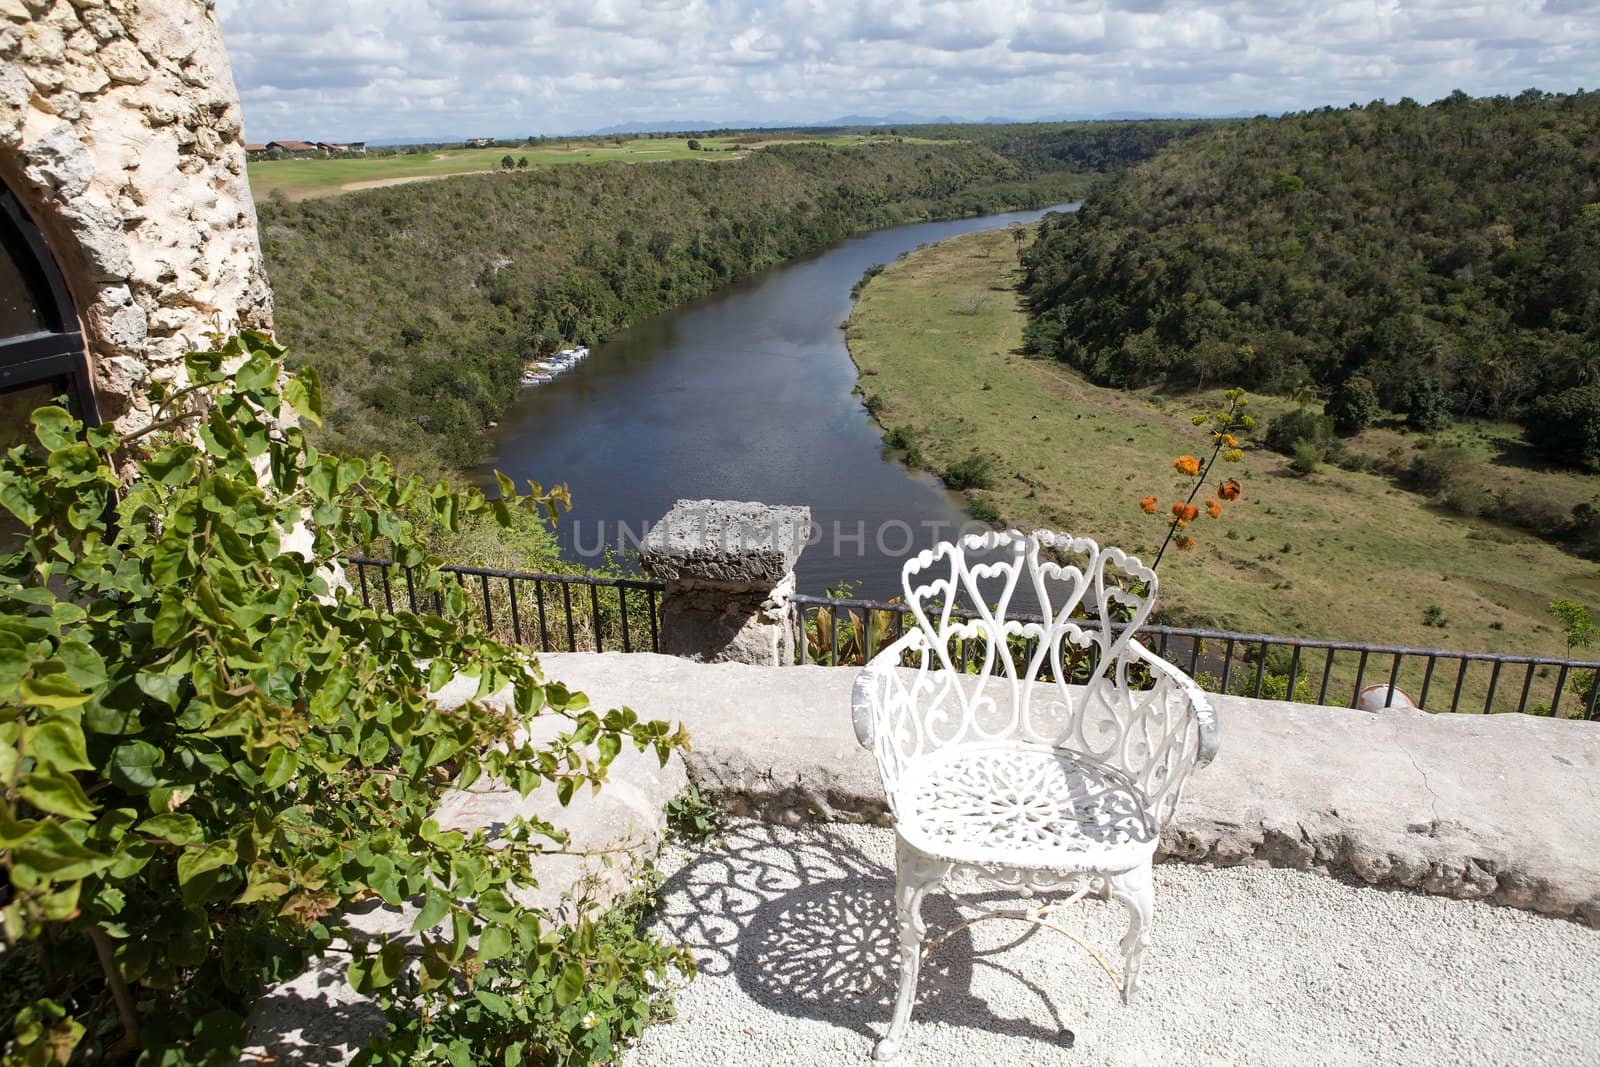 Chavon river view from Alto de Chavon, La Romana, Dominican Republic, Hispaniola island